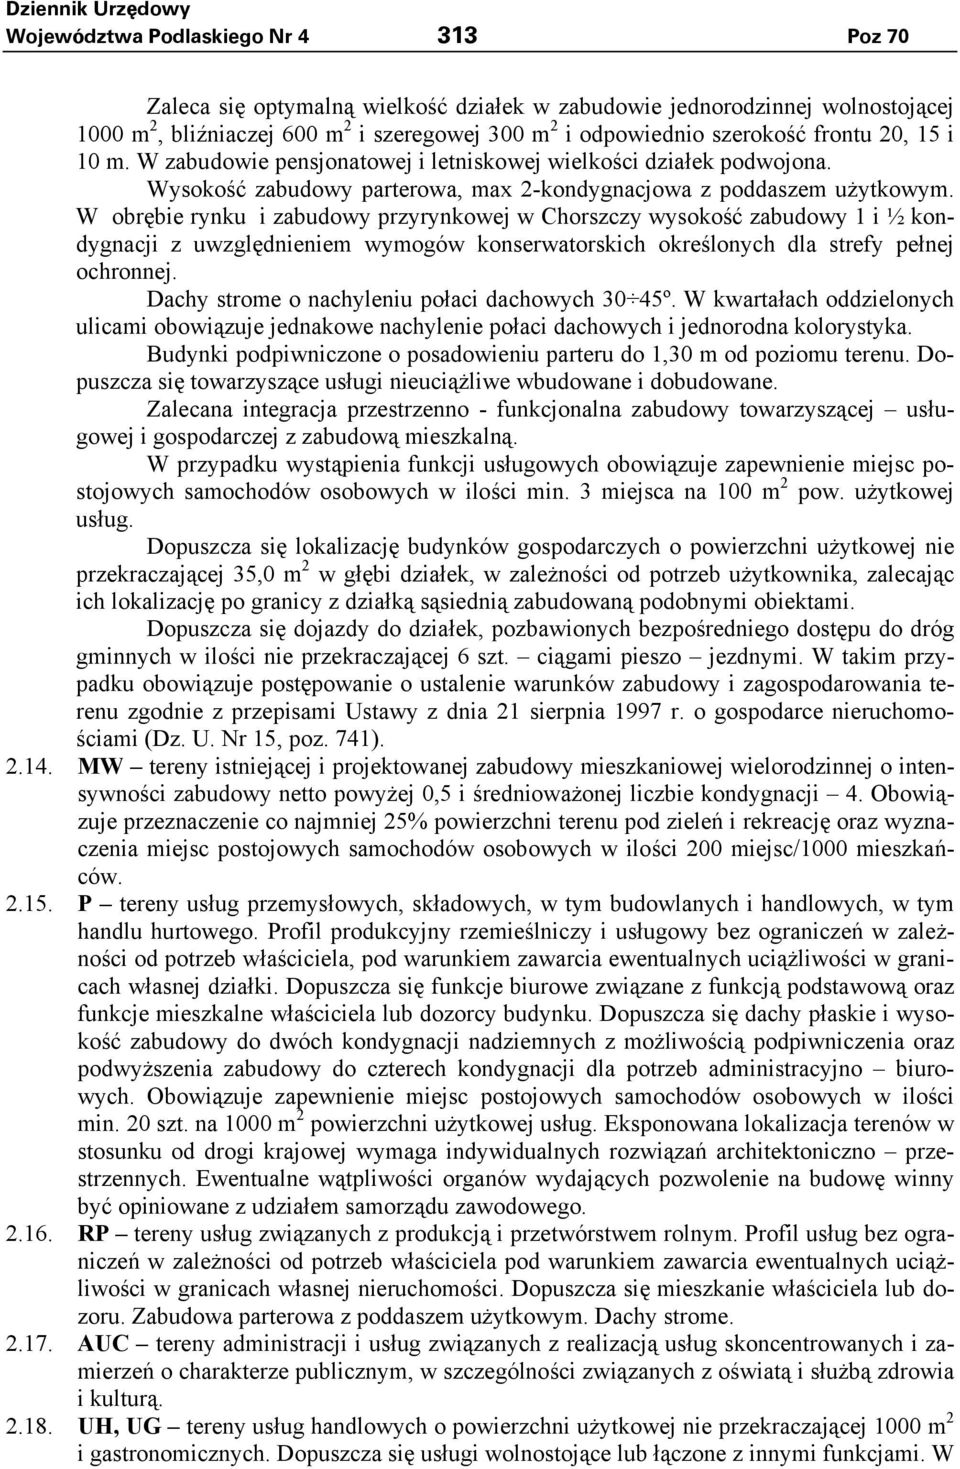 W obrębie rynku i zabudowy przyrynkowej w Chorszczy wysokość zabudowy 1 i ½ kondygnacji z uwzględnieniem wymogów konserwatorskich określonych dla strefy pełnej ochronnej.